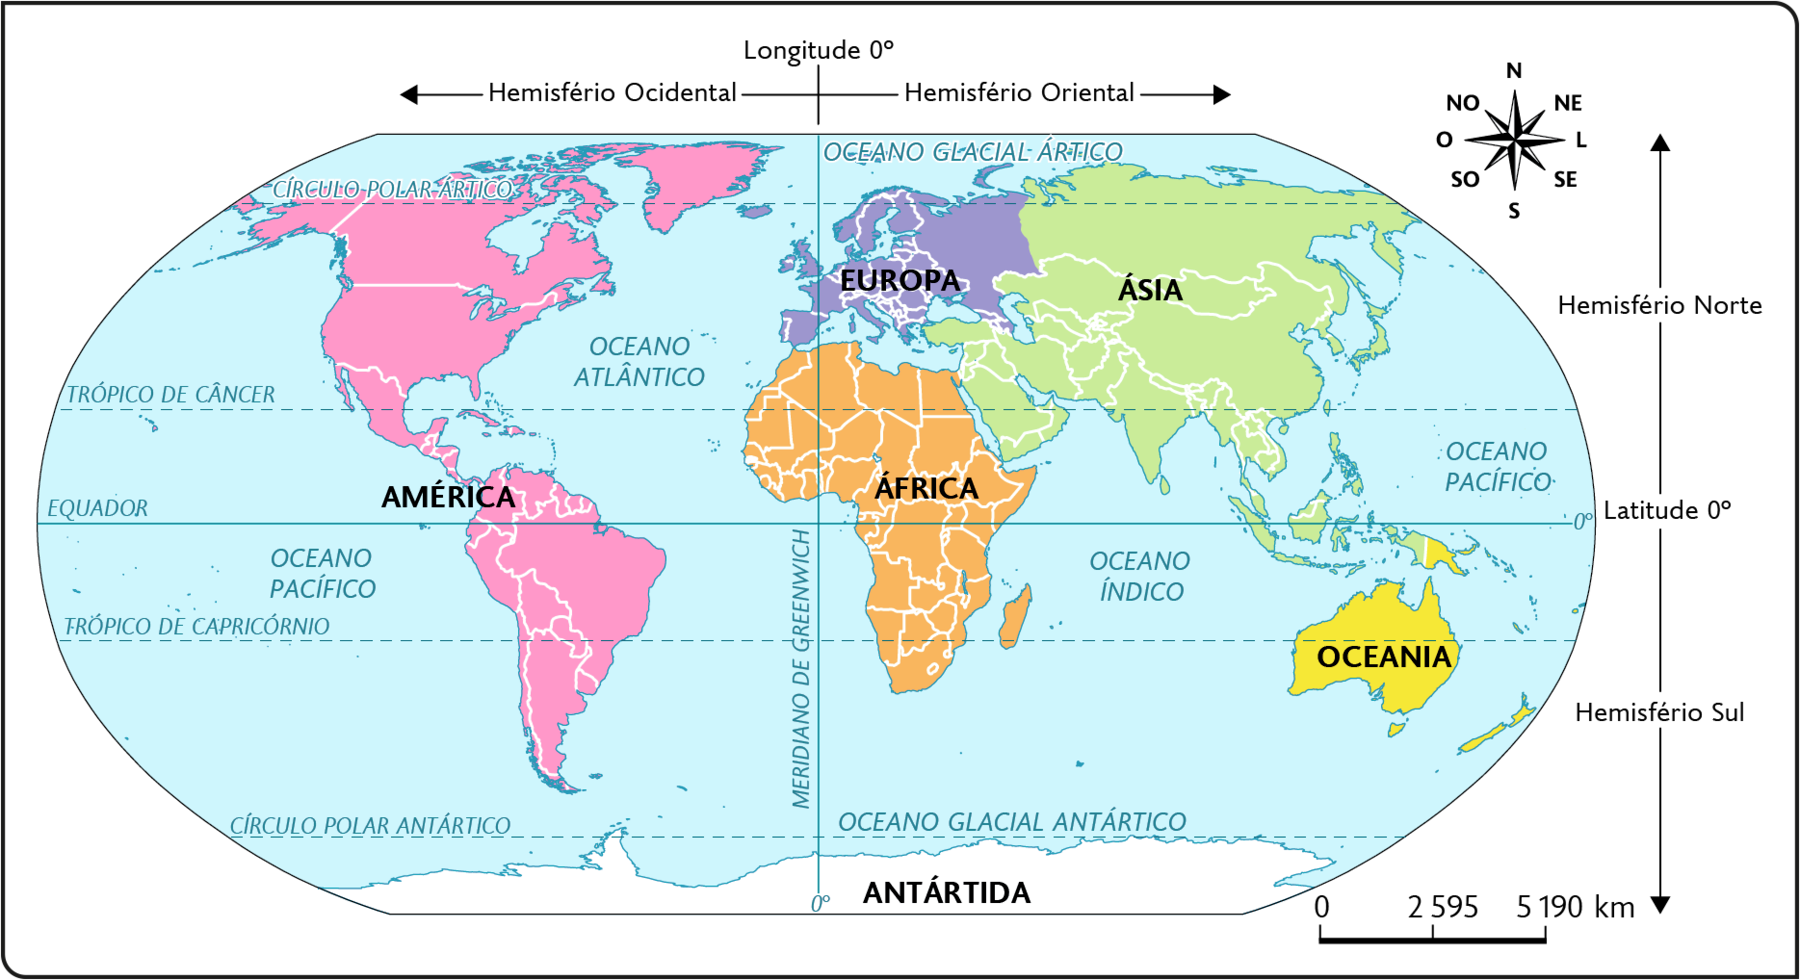 Mapa. Superfície terrestre: continentes e oceanos. No oeste, a América, no centro, África, ao norte, a Europa; no nordeste, a Ásia e no sudoeste, a Oceania. Na porção sul, a Antártida. No oeste da América, o Oceano Pacífico, entre a América e a África e a Europa, o Oceano Atlântico, ao sul da Ásia, o Oceano Índico. Ao norte da Antártida, o Oceano Glacial Antártico. Ao centro do mapa, na horizontal, a Linha do Equador com Latitude 0 grau. Uma seta indica que a porção acima dessa linha representa o Hemisfério Norte, outra seta indica que a porção abaixo da linha do Equador representa o Hemisfério Sul. Ao centro, na vertical, o Meridiano de Greenwich com longitude 0 grau, a porção esquerda é indicada como: Hemisfério Ocidental, a porção direita, indicada como: Hemisfério Oriental. No canto superior direito, a rosa dos ventos e na parte inferior, a escala: 2595 quilômetros por centímetro.